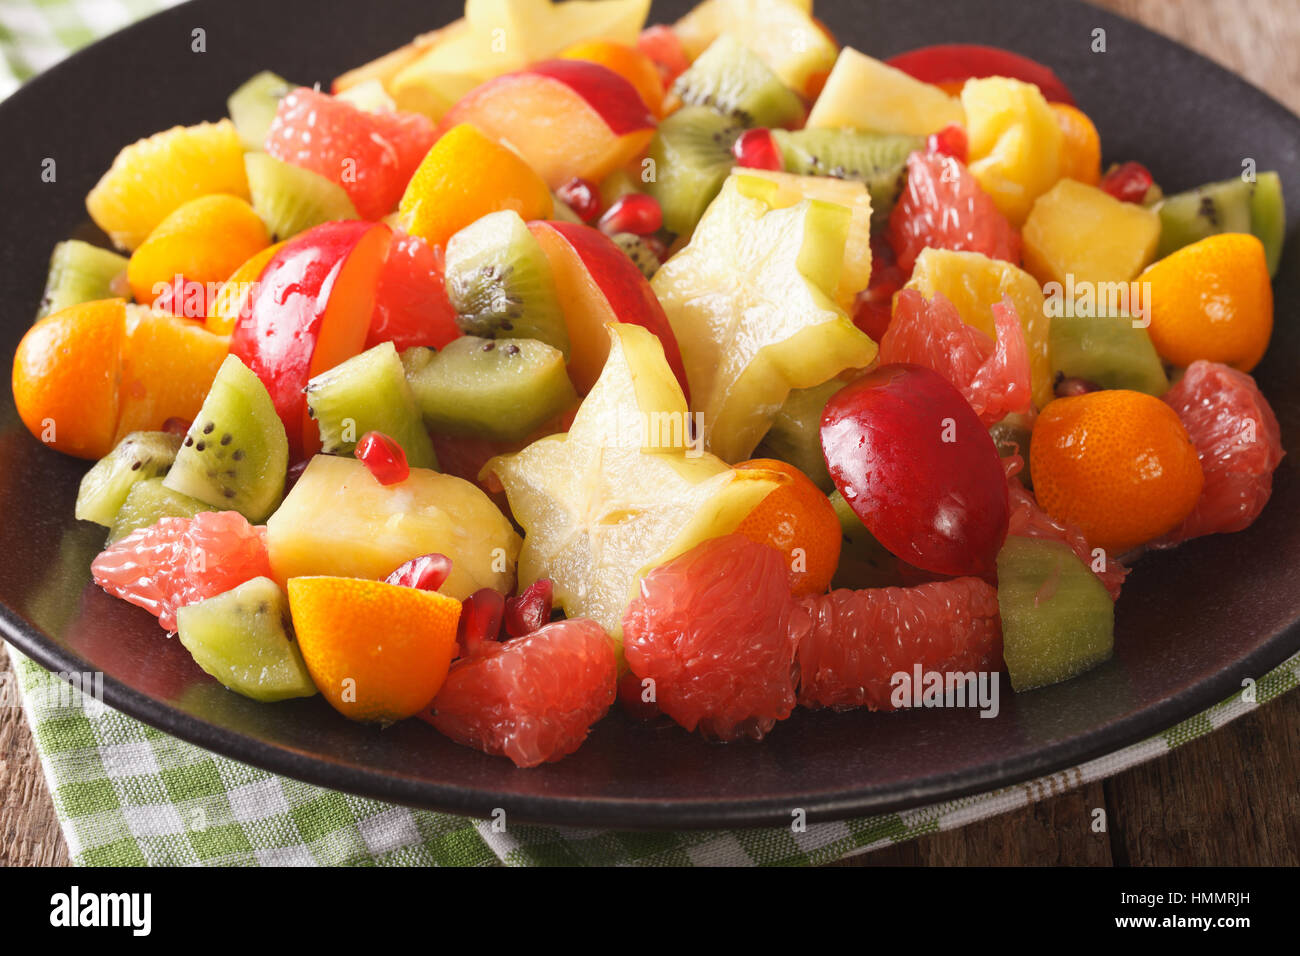 Fruit salad with orange, kumquat, pineapple, carambola, grapefruit, plum, pomegranate and kiwi close-up on a plate. horizontal Stock Photo